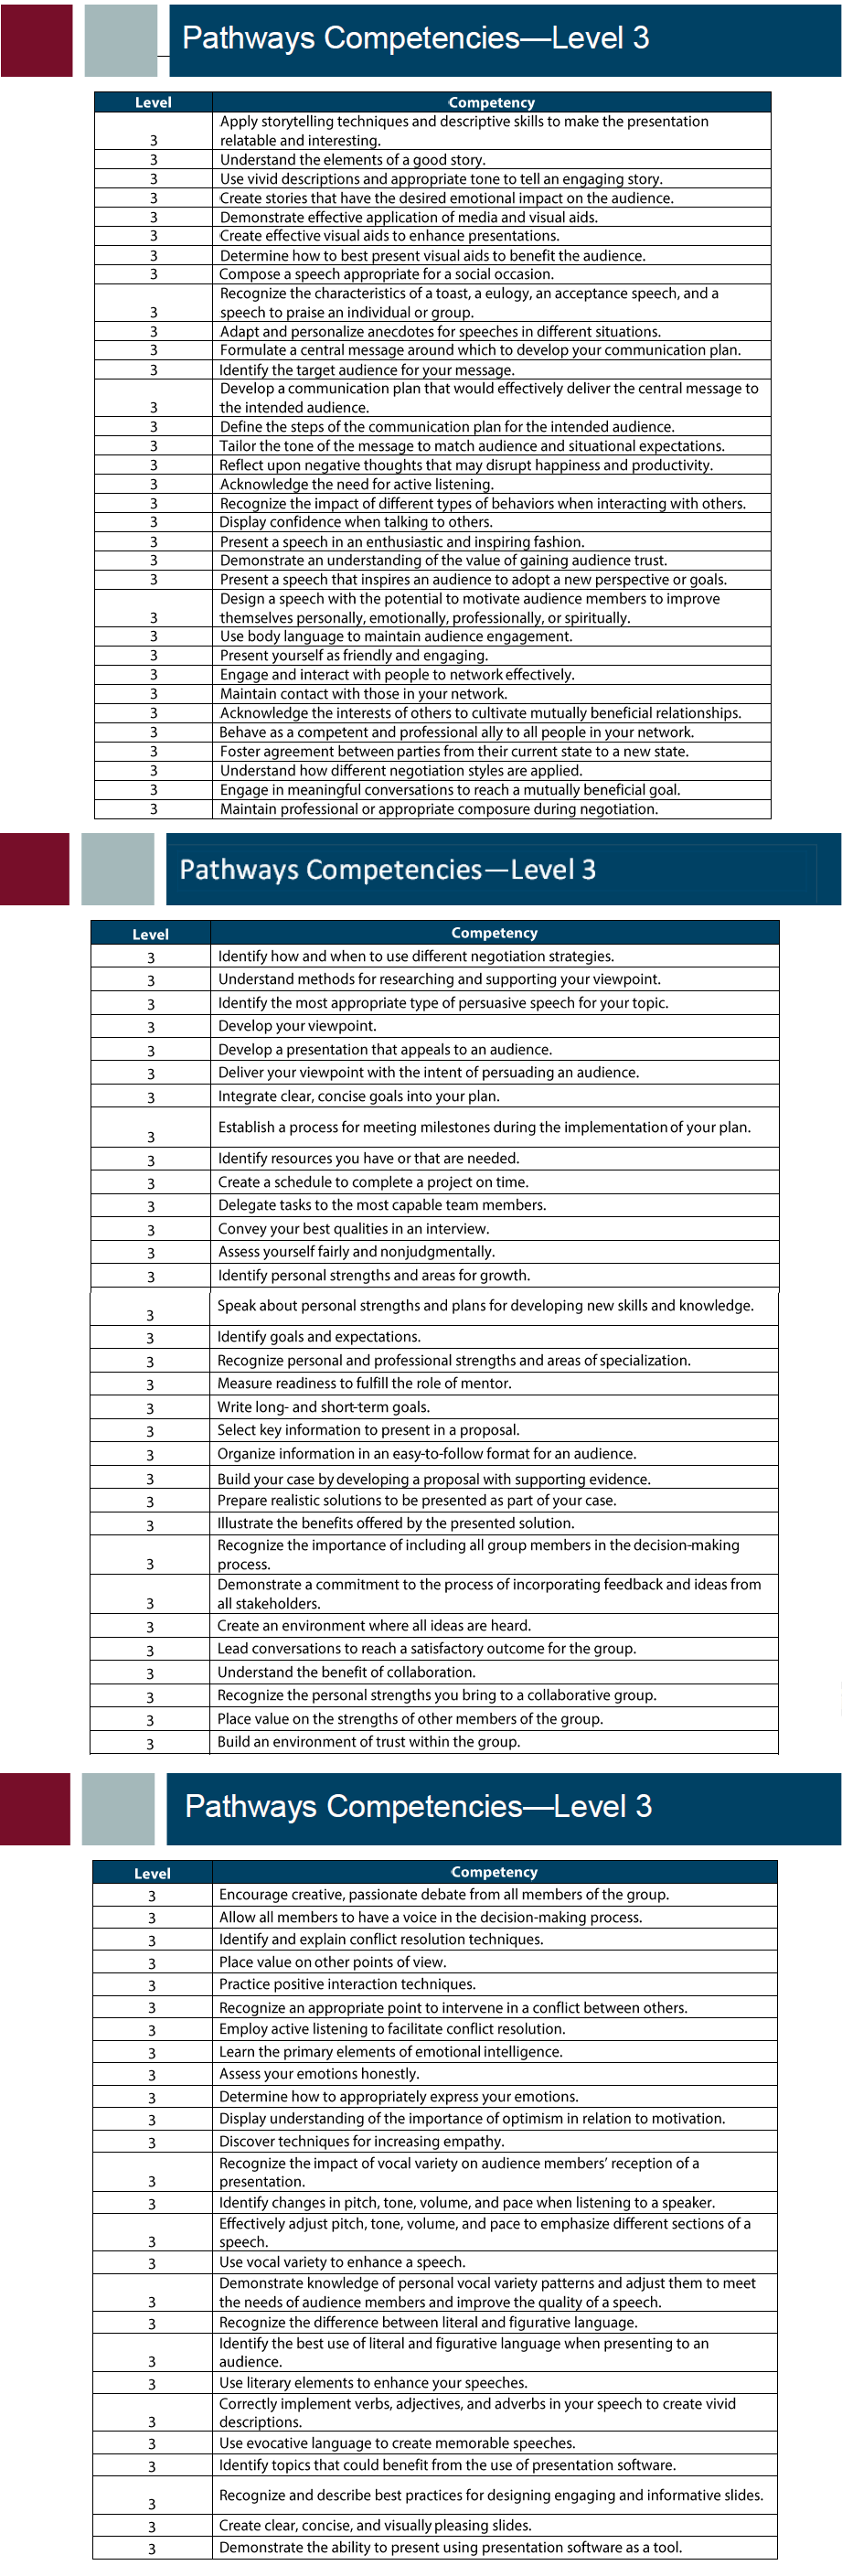 PATHWAYS Competencies - Level 03